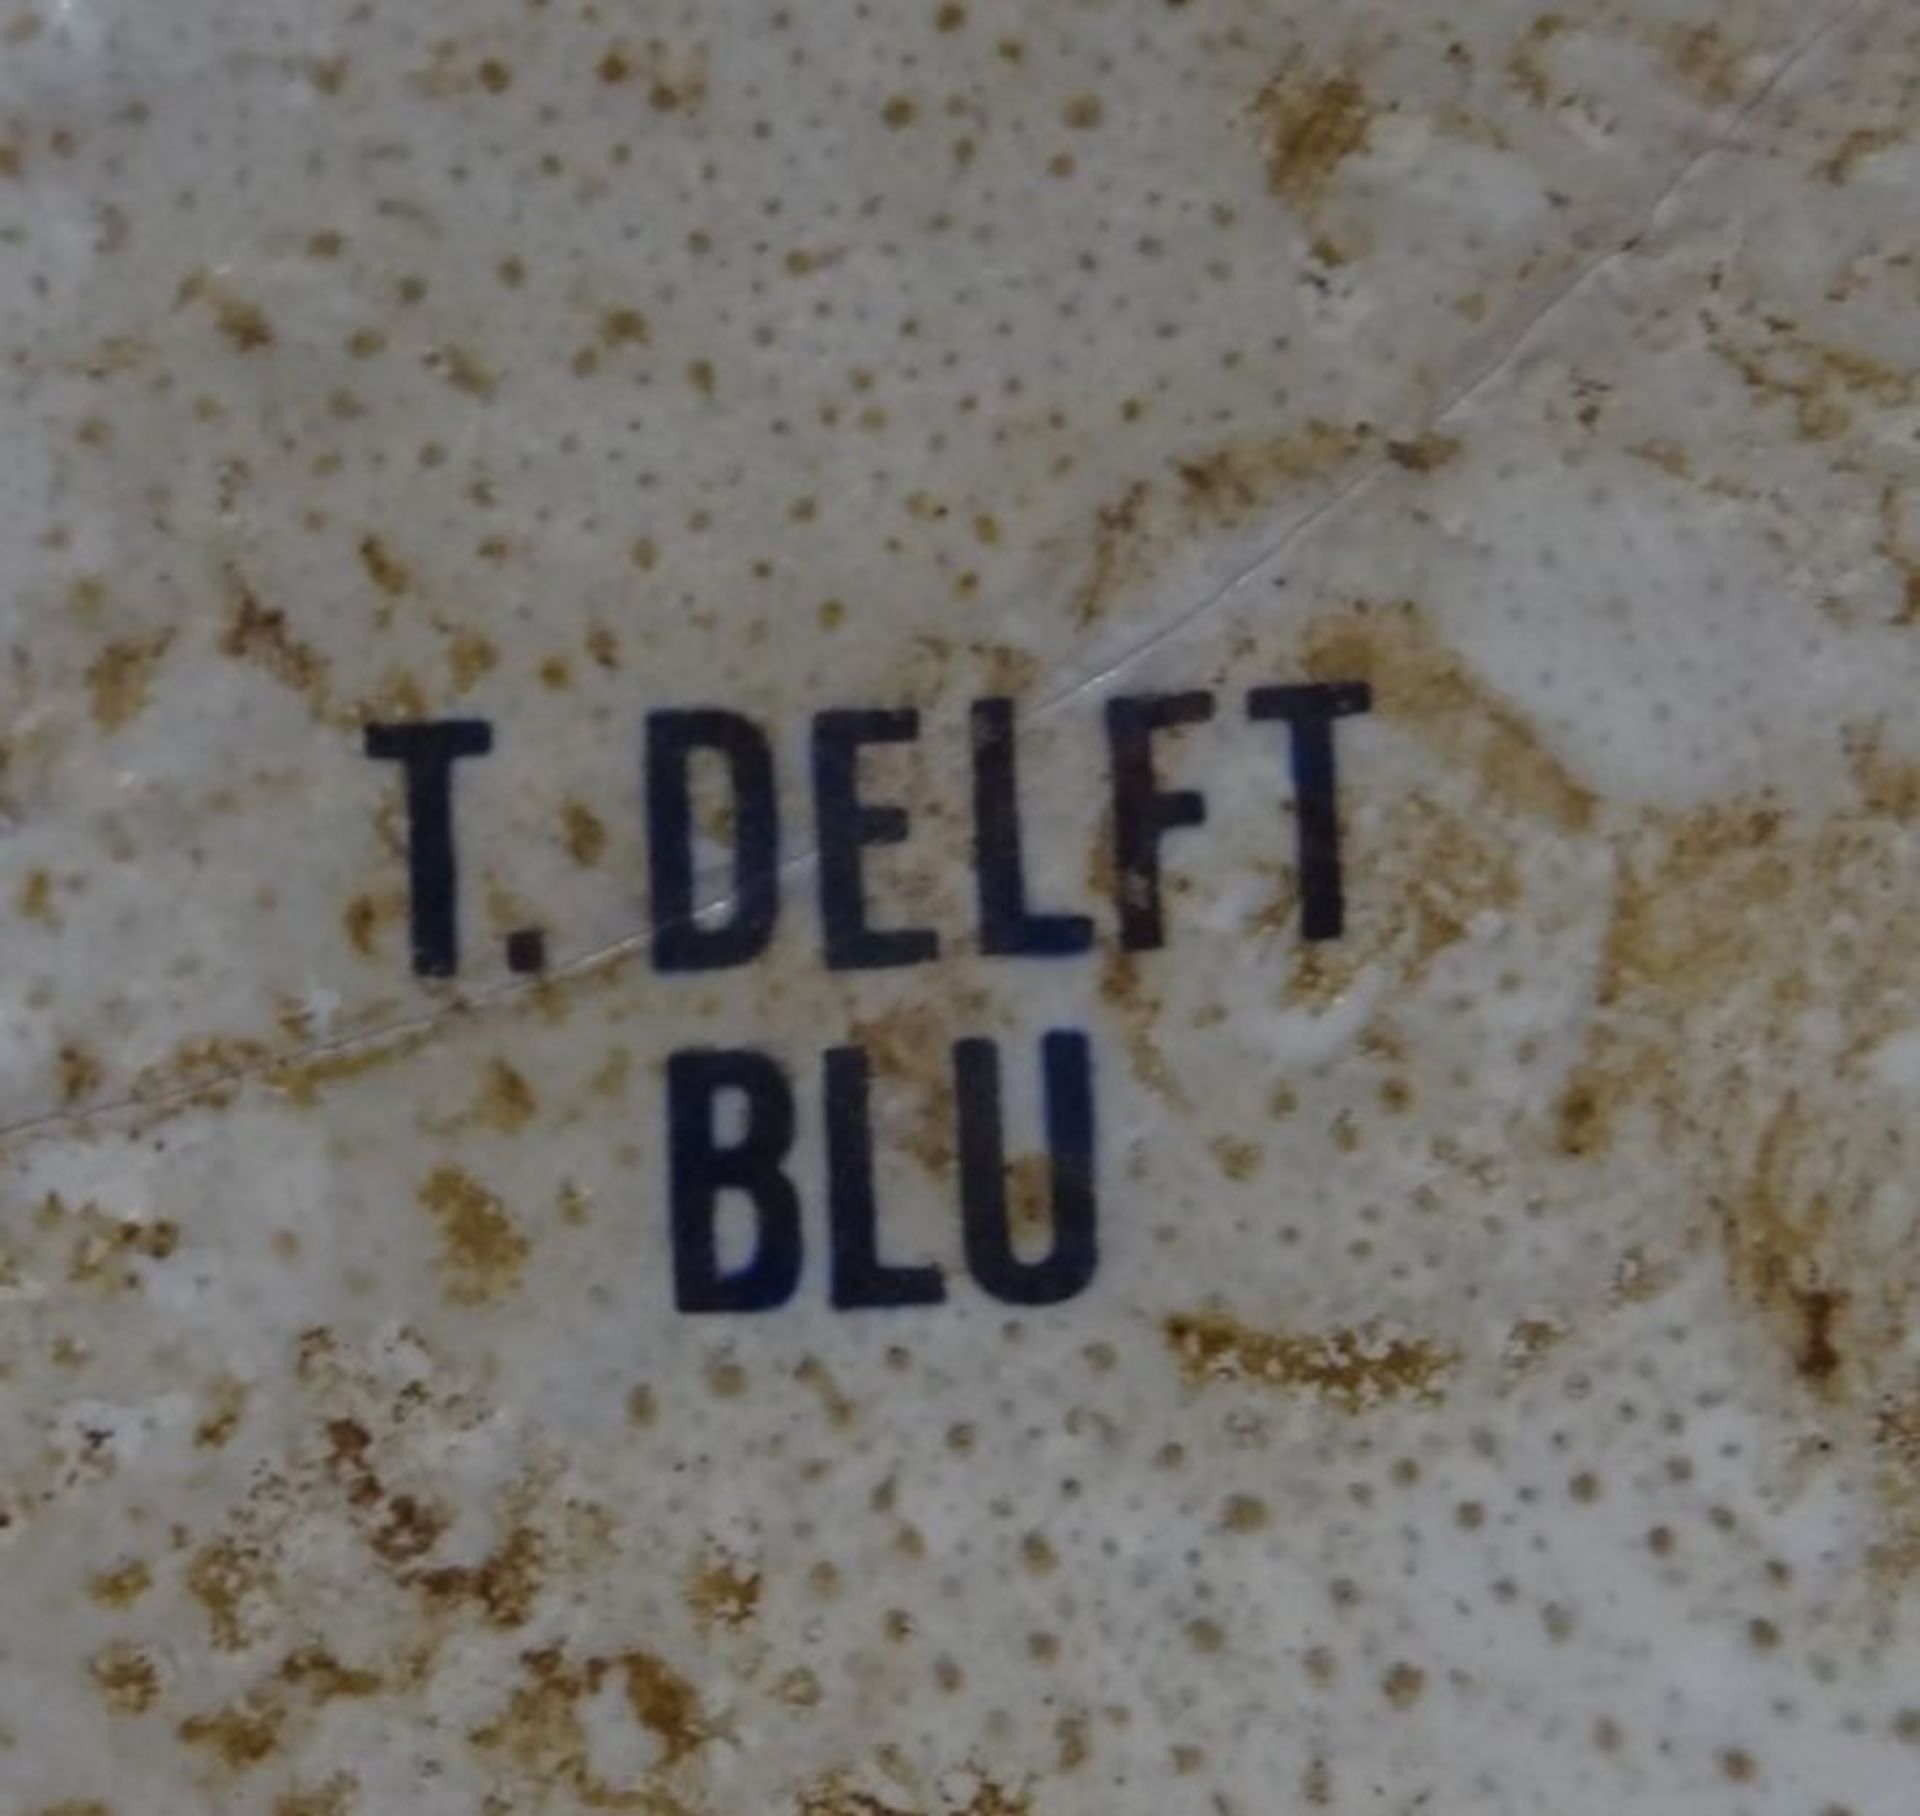 Deckelvase, Delft blu, Baluamlerei, H-40 cm- - -22.61 % buyer's premium on the hammer priceVAT - Bild 7 aus 7